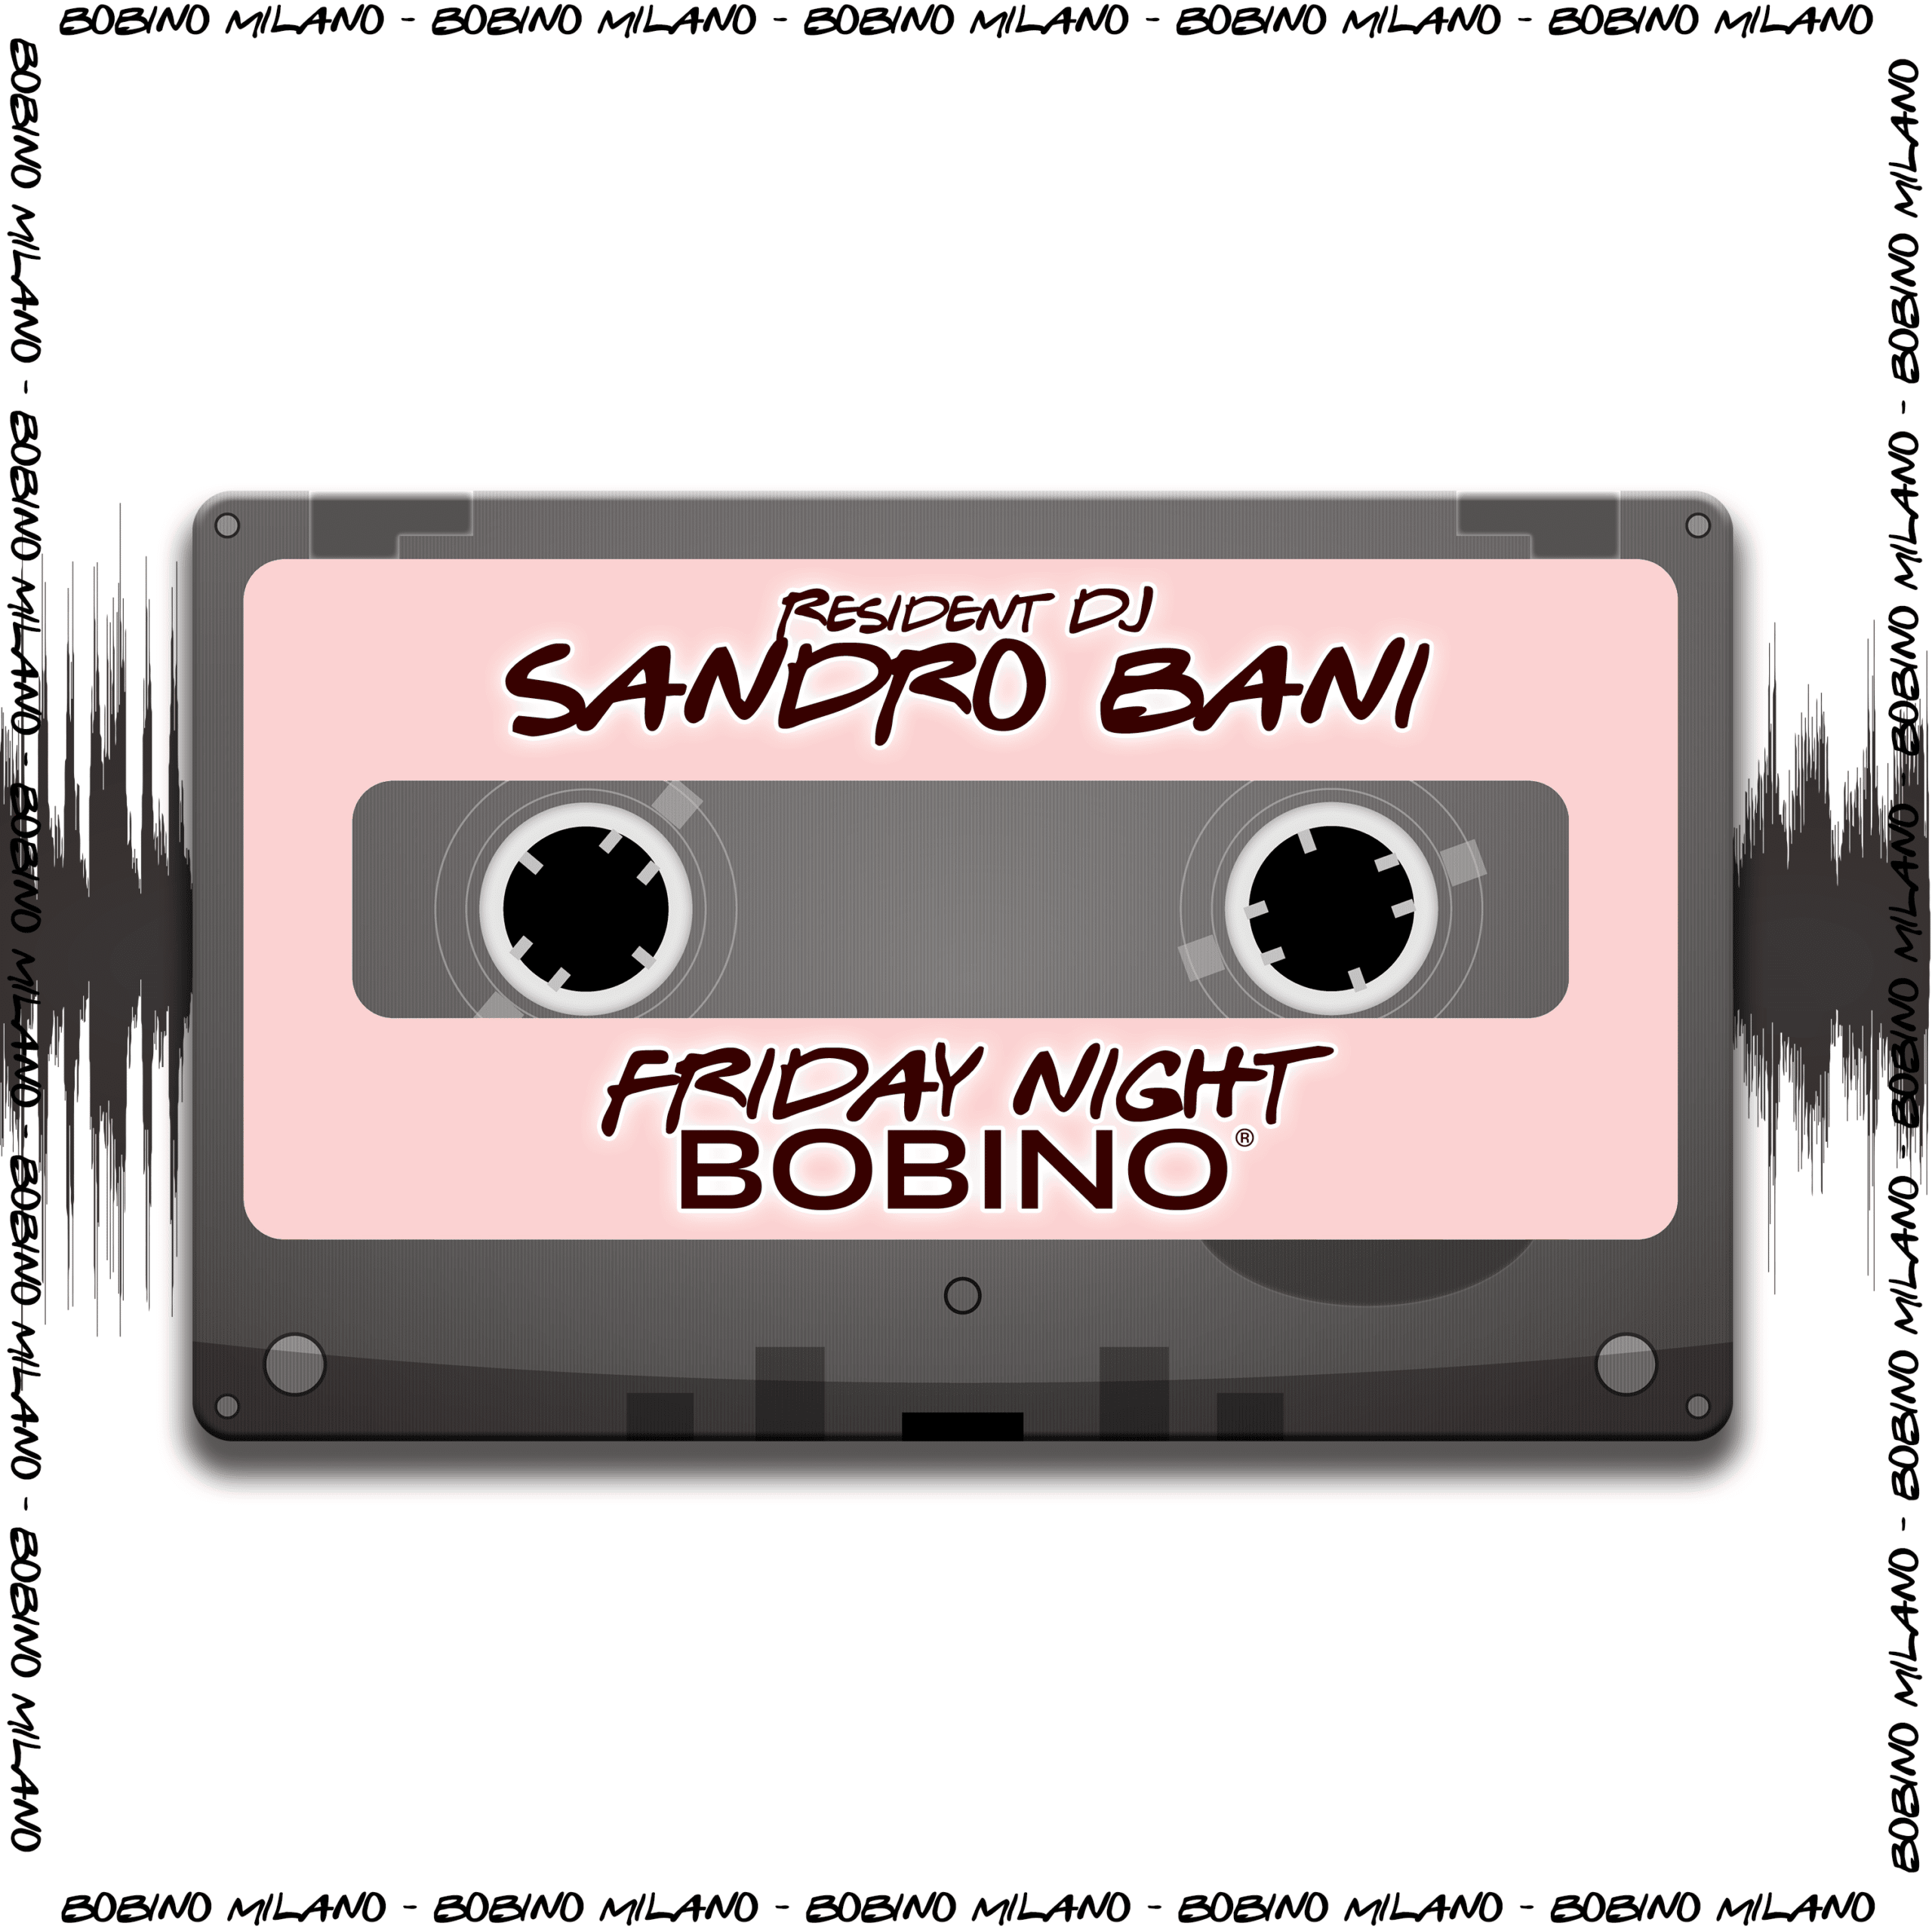 Sandro Bani Bobino Milano Friday Night